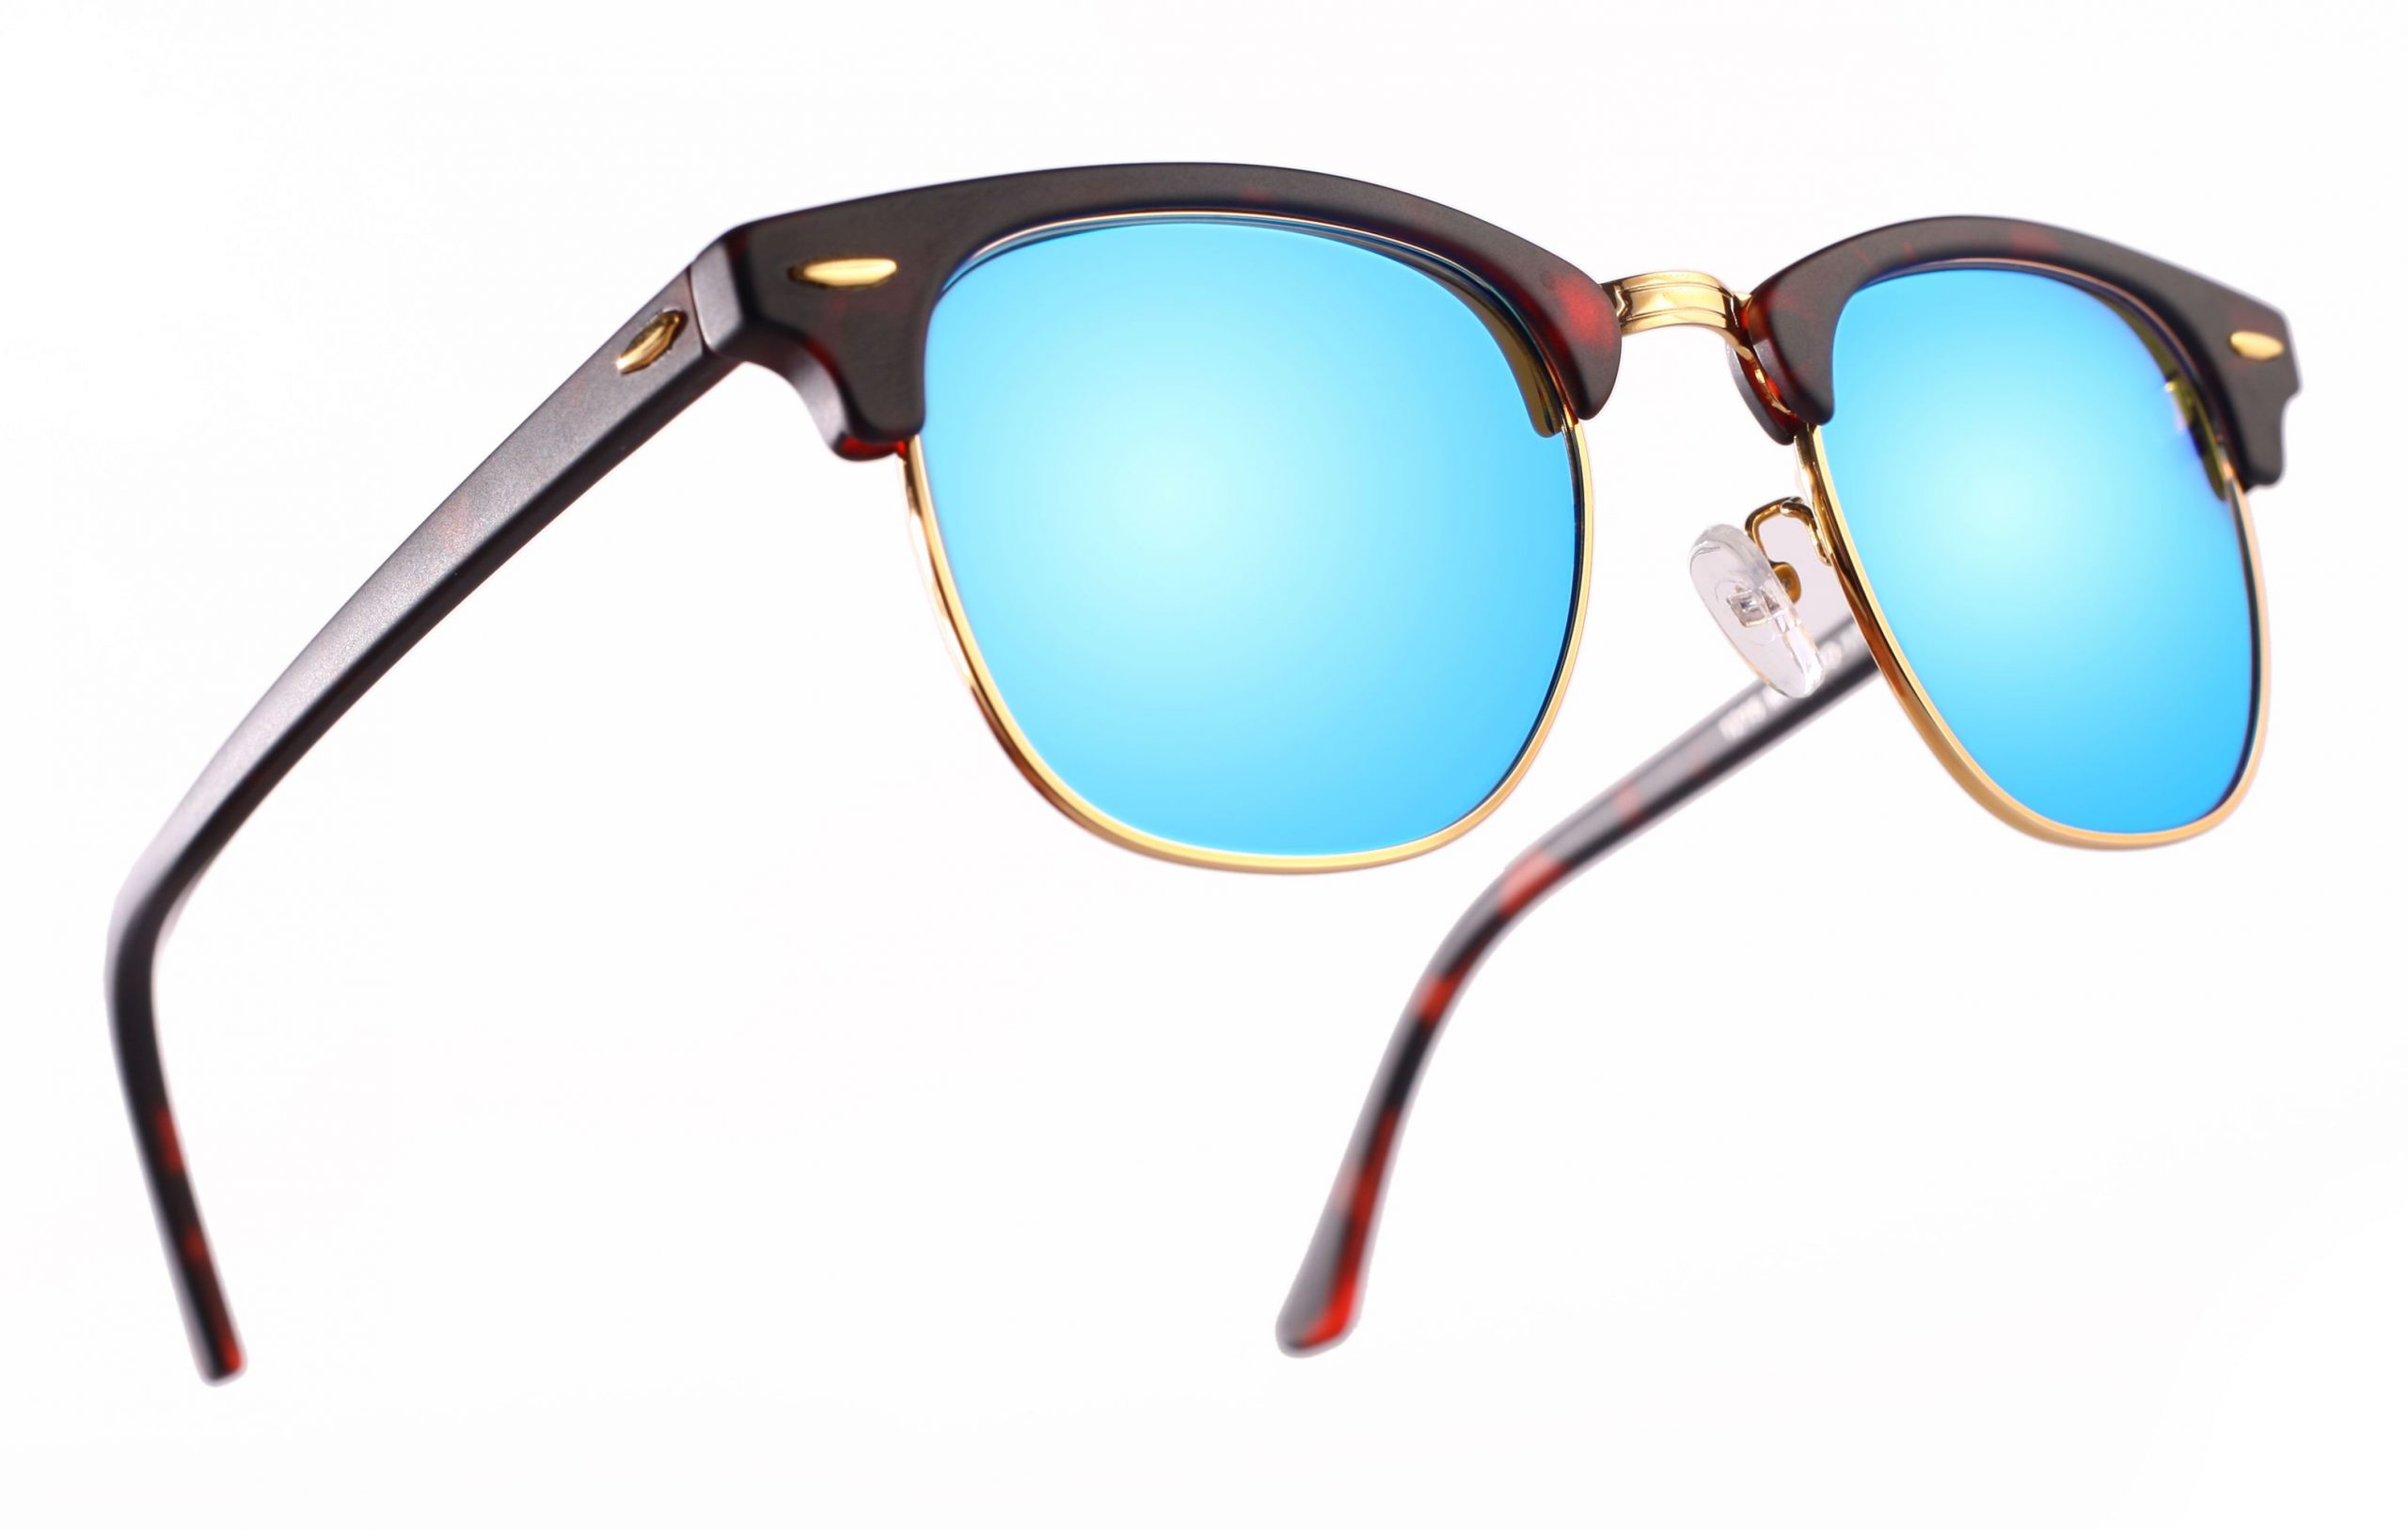 Gafas de sol estilo clásica. 10 mejores gafas Verano 2017